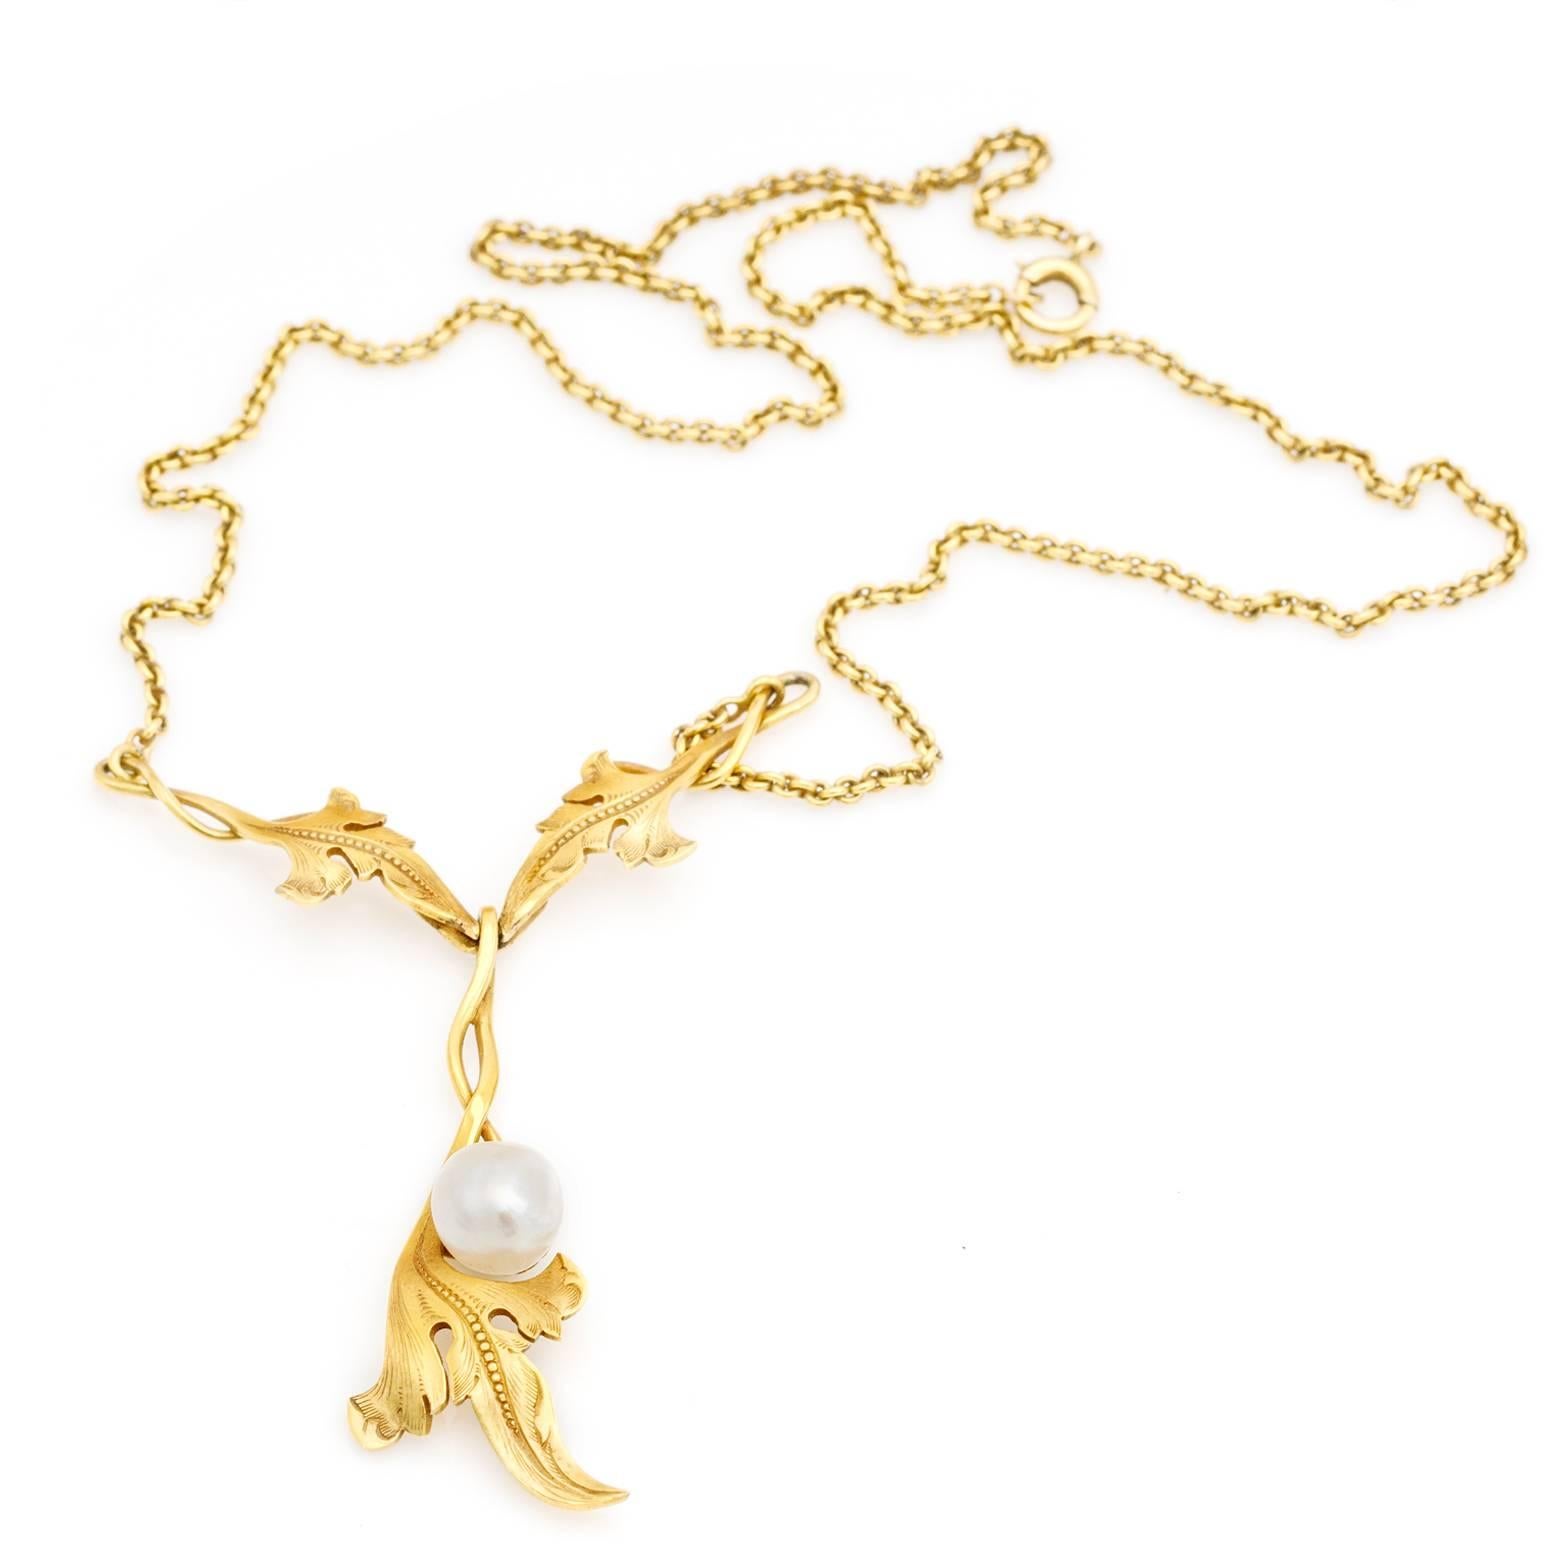 Antique Gold Necklace Art Nouveau Style Natural Pearl For Sale 1